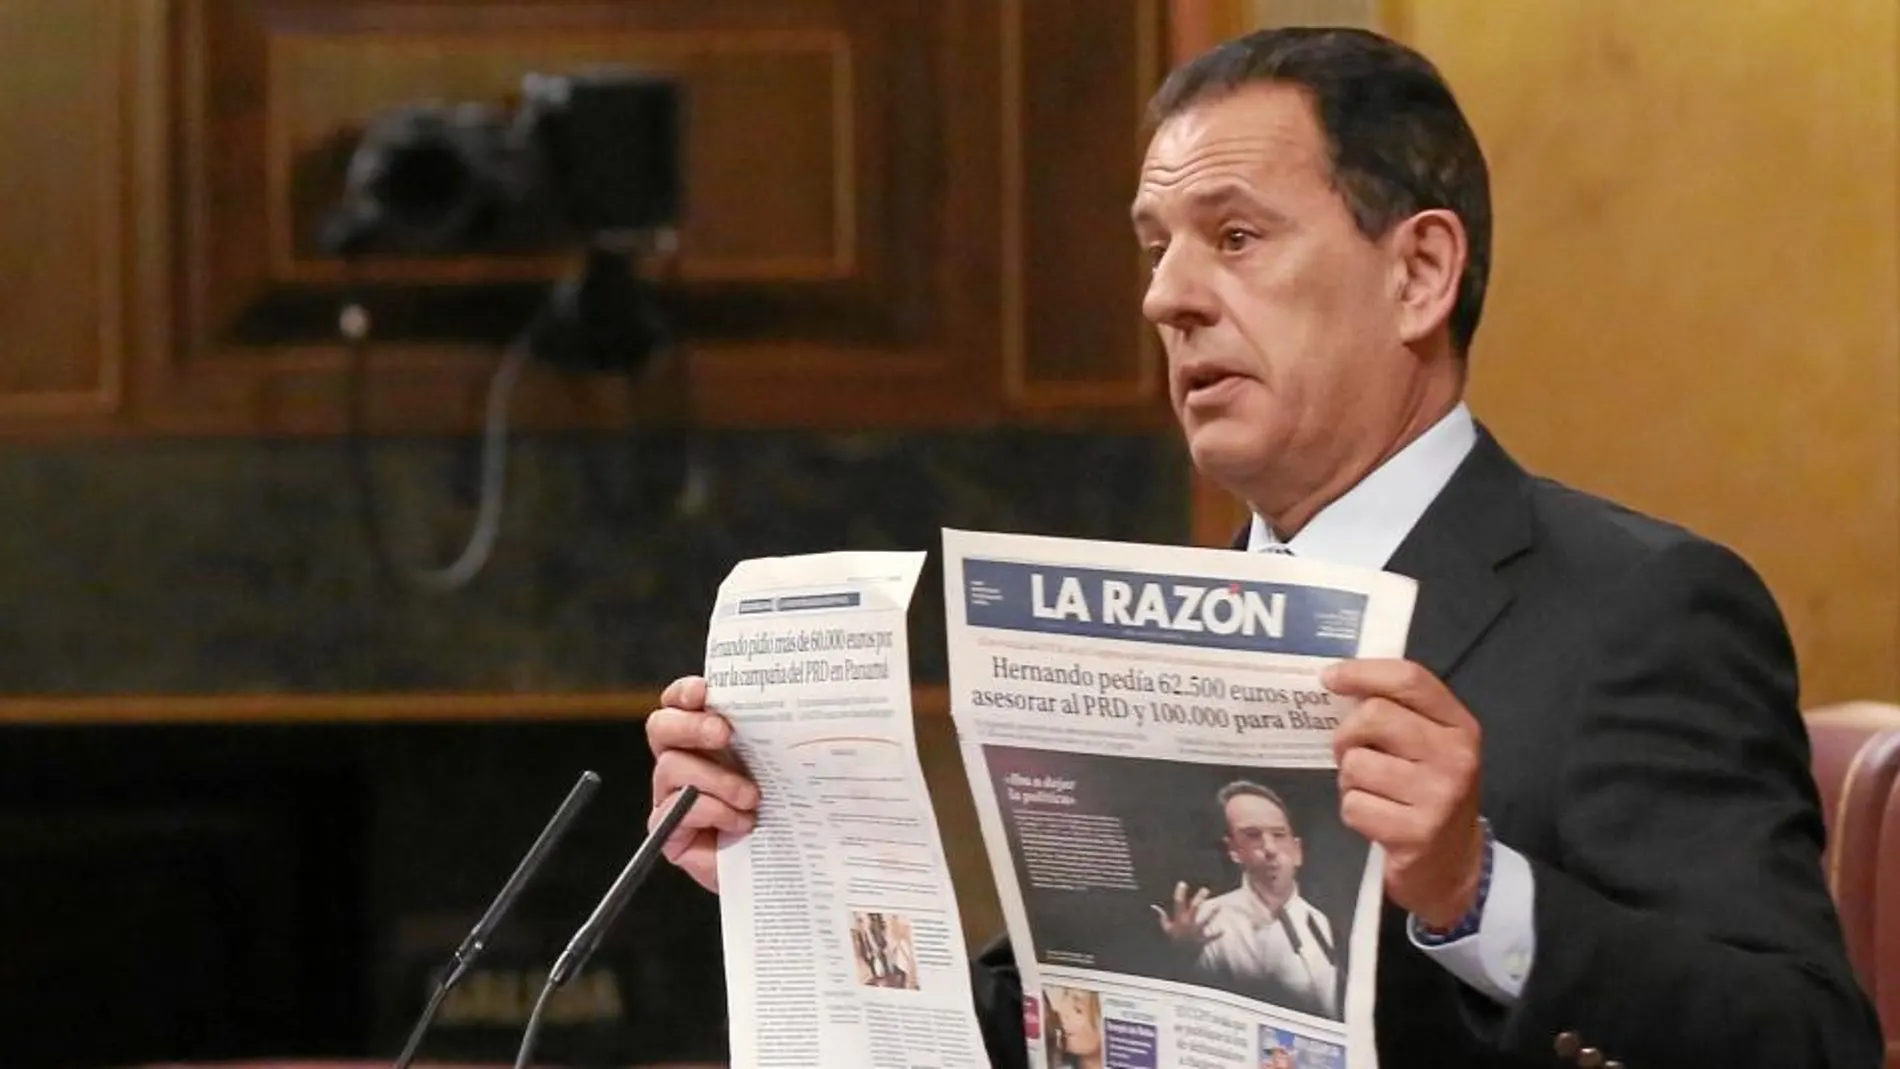 Rafael Merino con la portada del periódico en la que se publica que Hernando pidió 62.500 euros para asesorar al PRD en Panamá siendo diputado